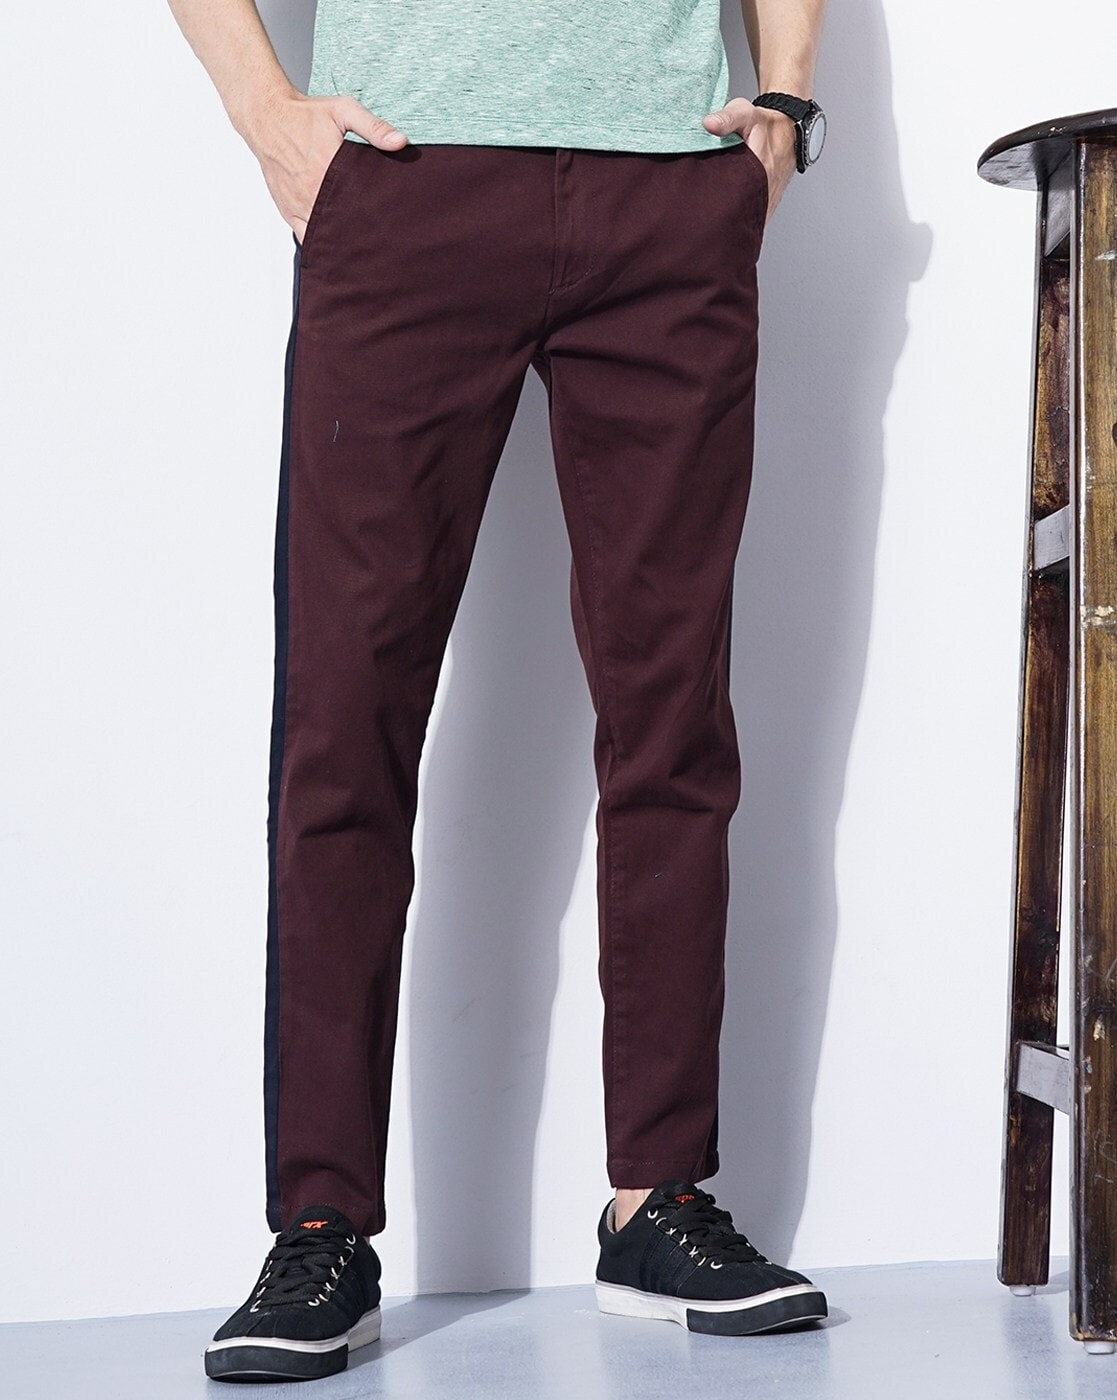 Buy Men Maroon Solid Slim Fit Formal Trousers Online  663373  Peter  England